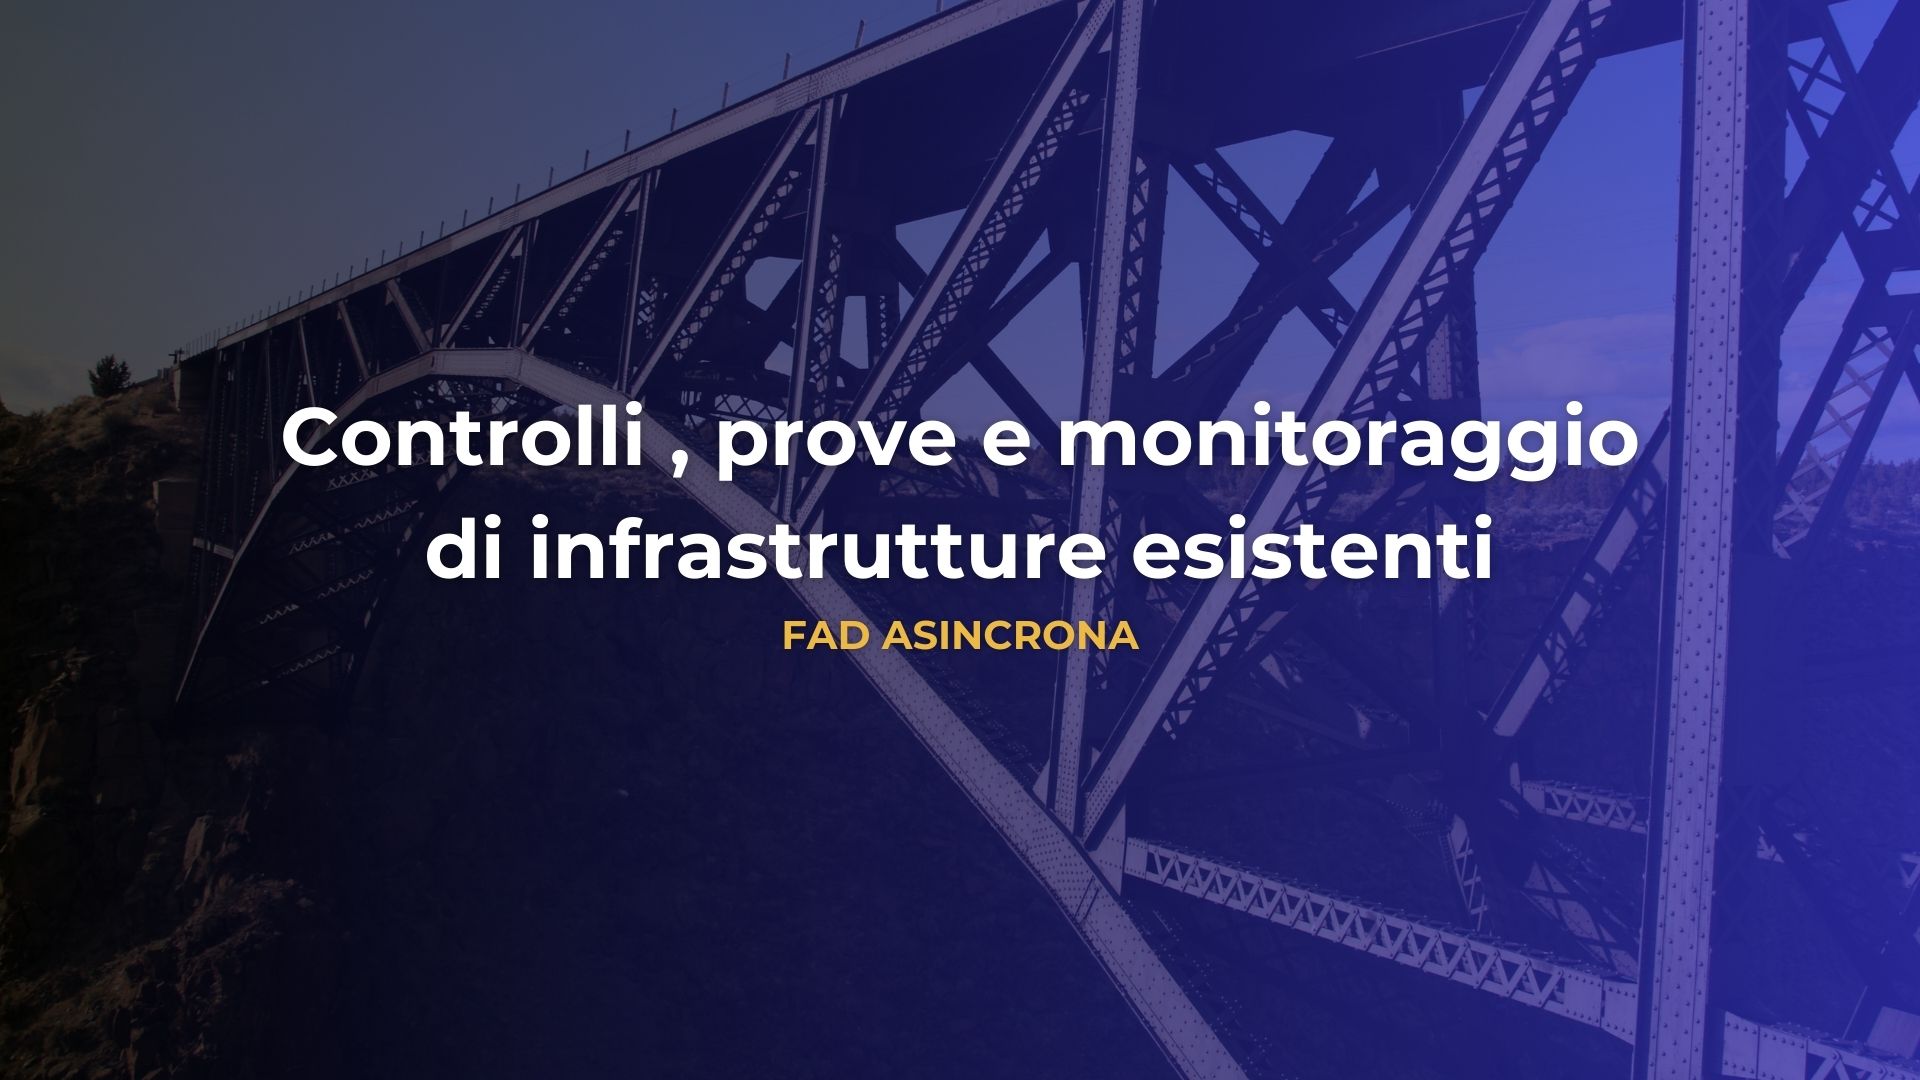 Controlli , prove e monitoraggio di infrastrutture esistenti - FAD asincrona